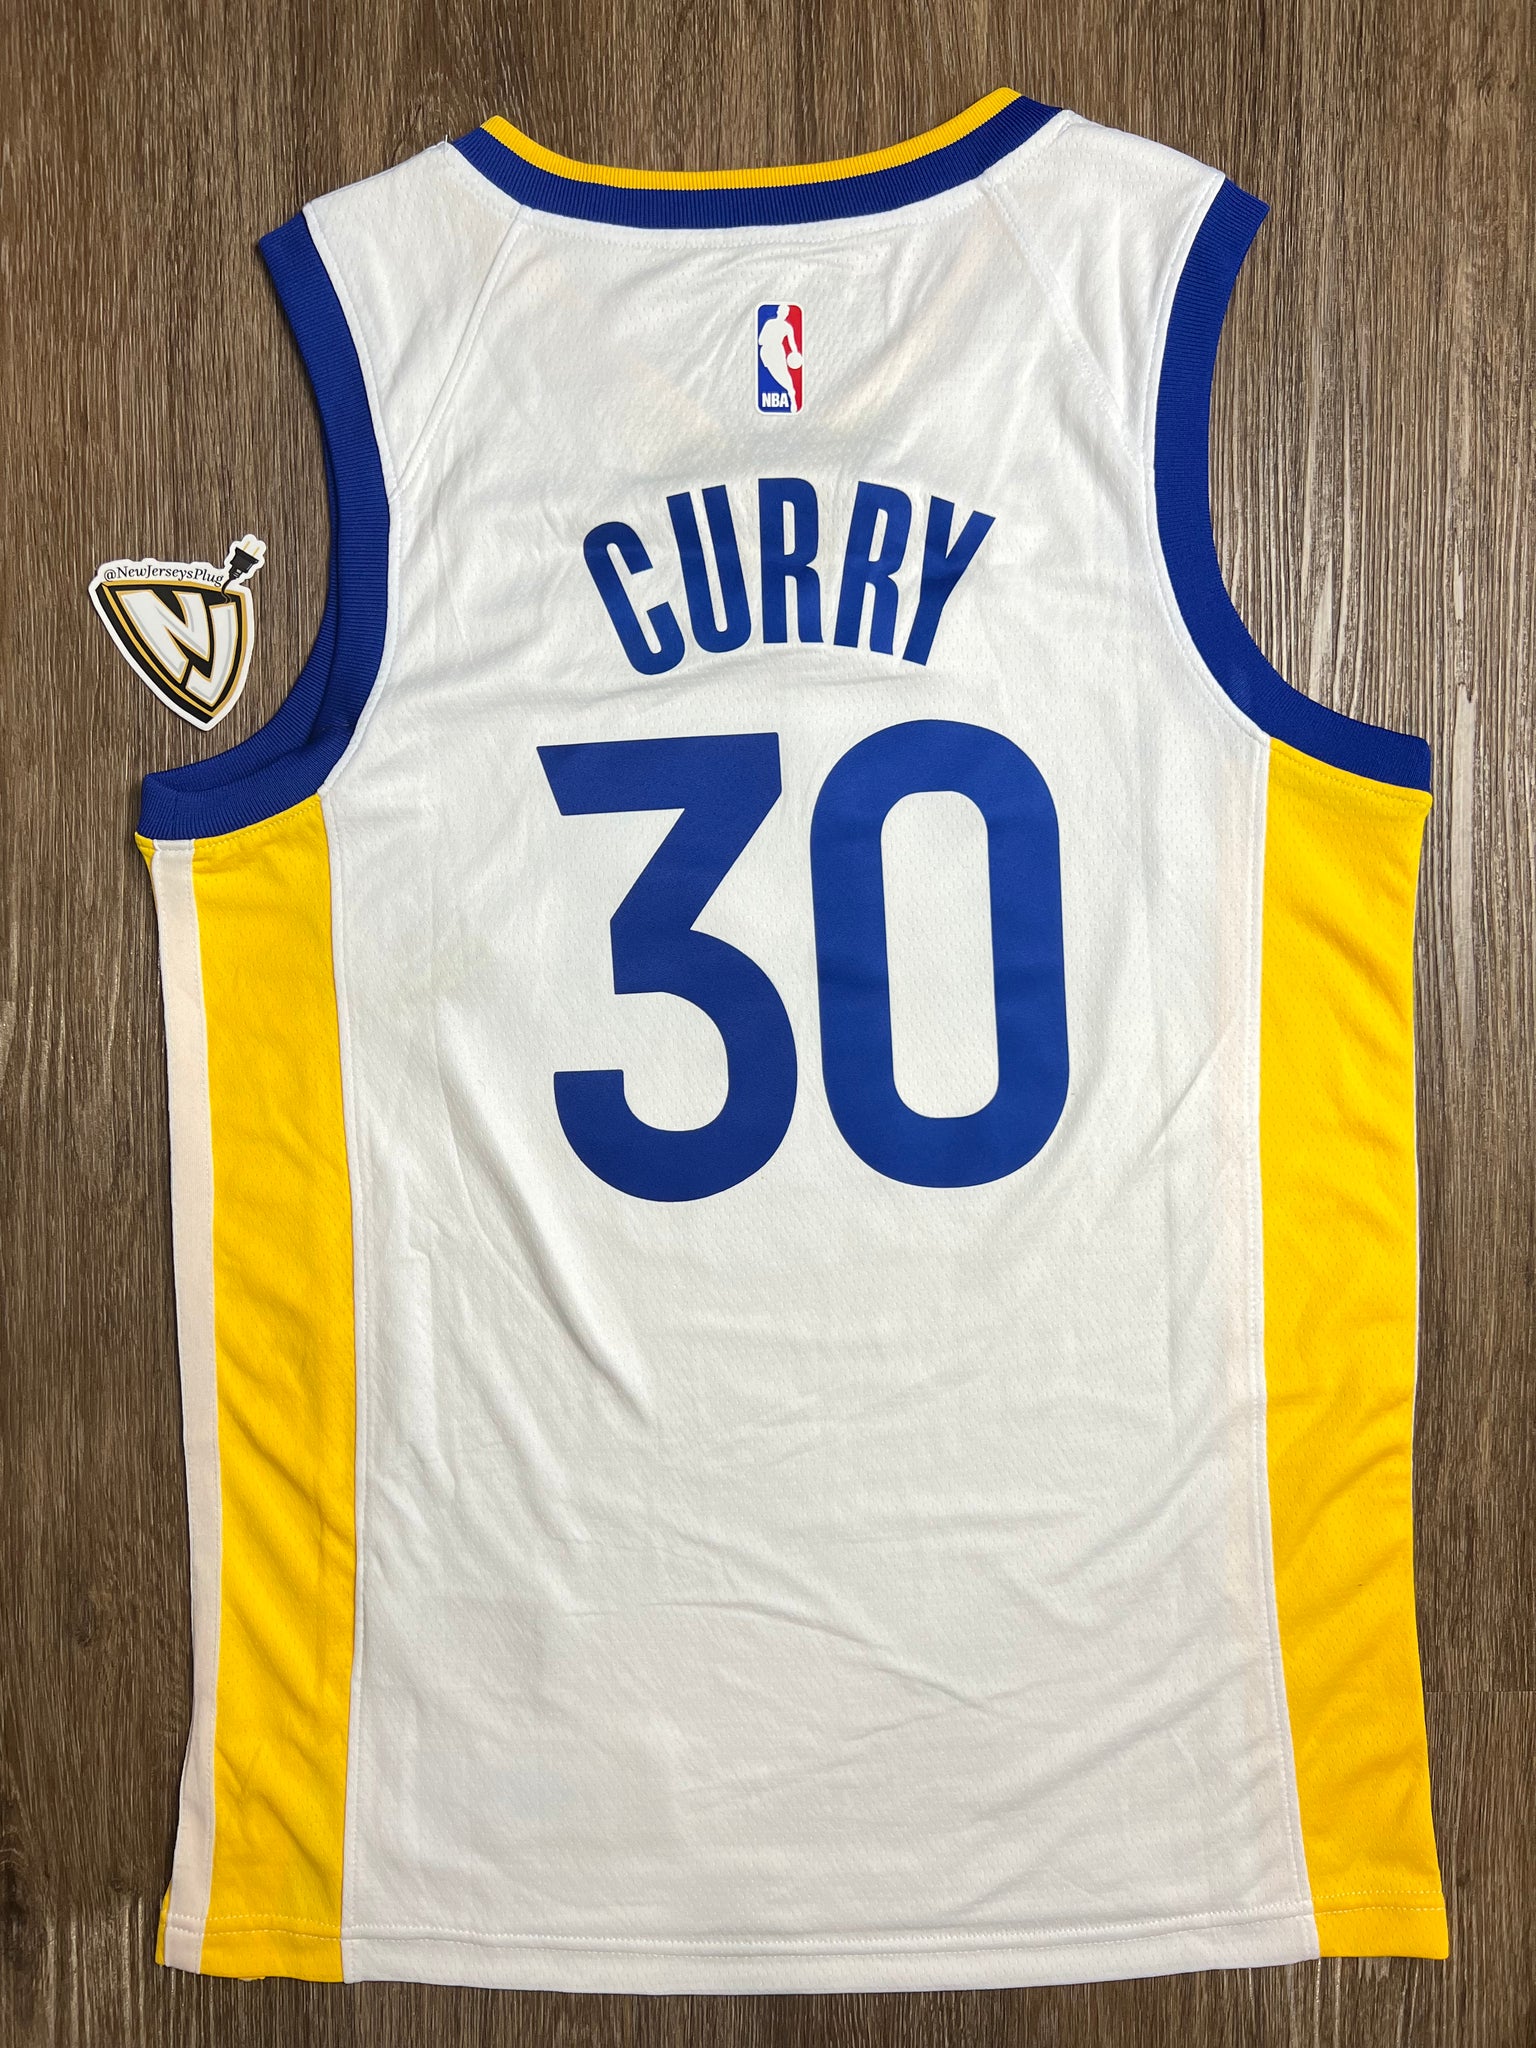 Golden State Warriors Steph Curry Home Jersey – NewJerseysPlug